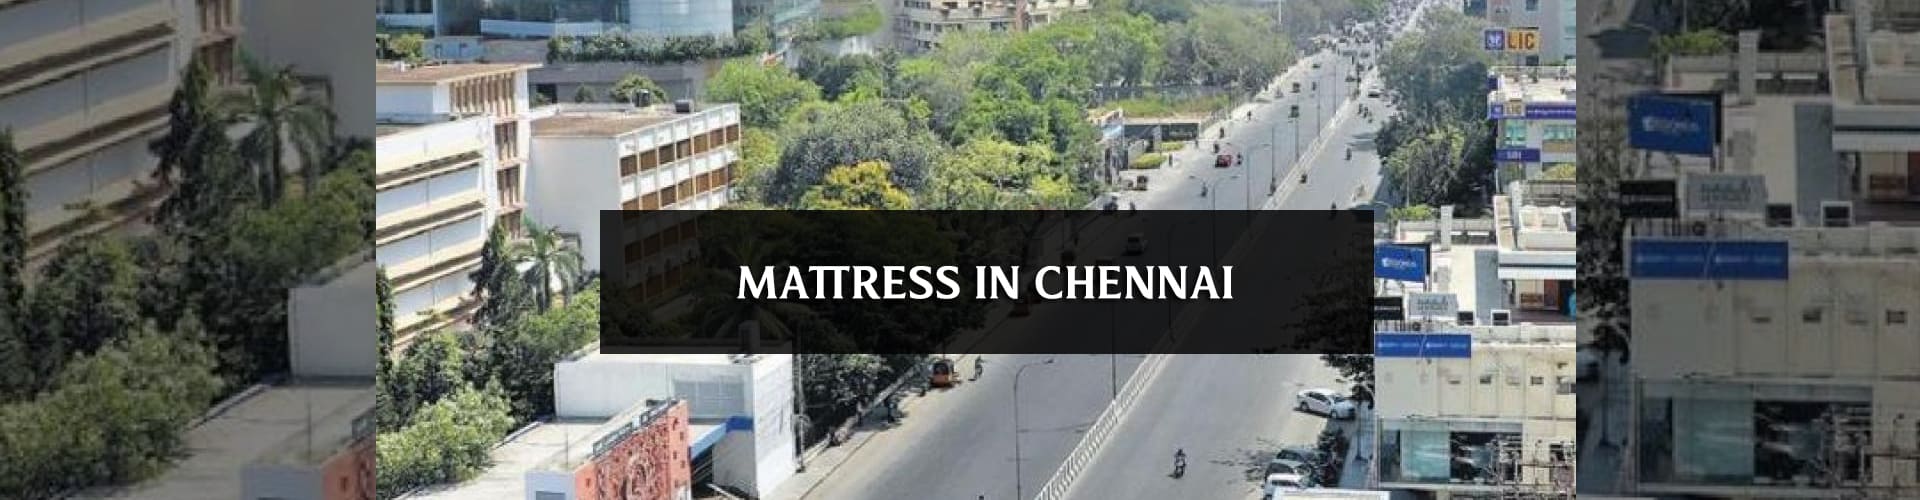 Buy best pocket spring mattress online in chennai